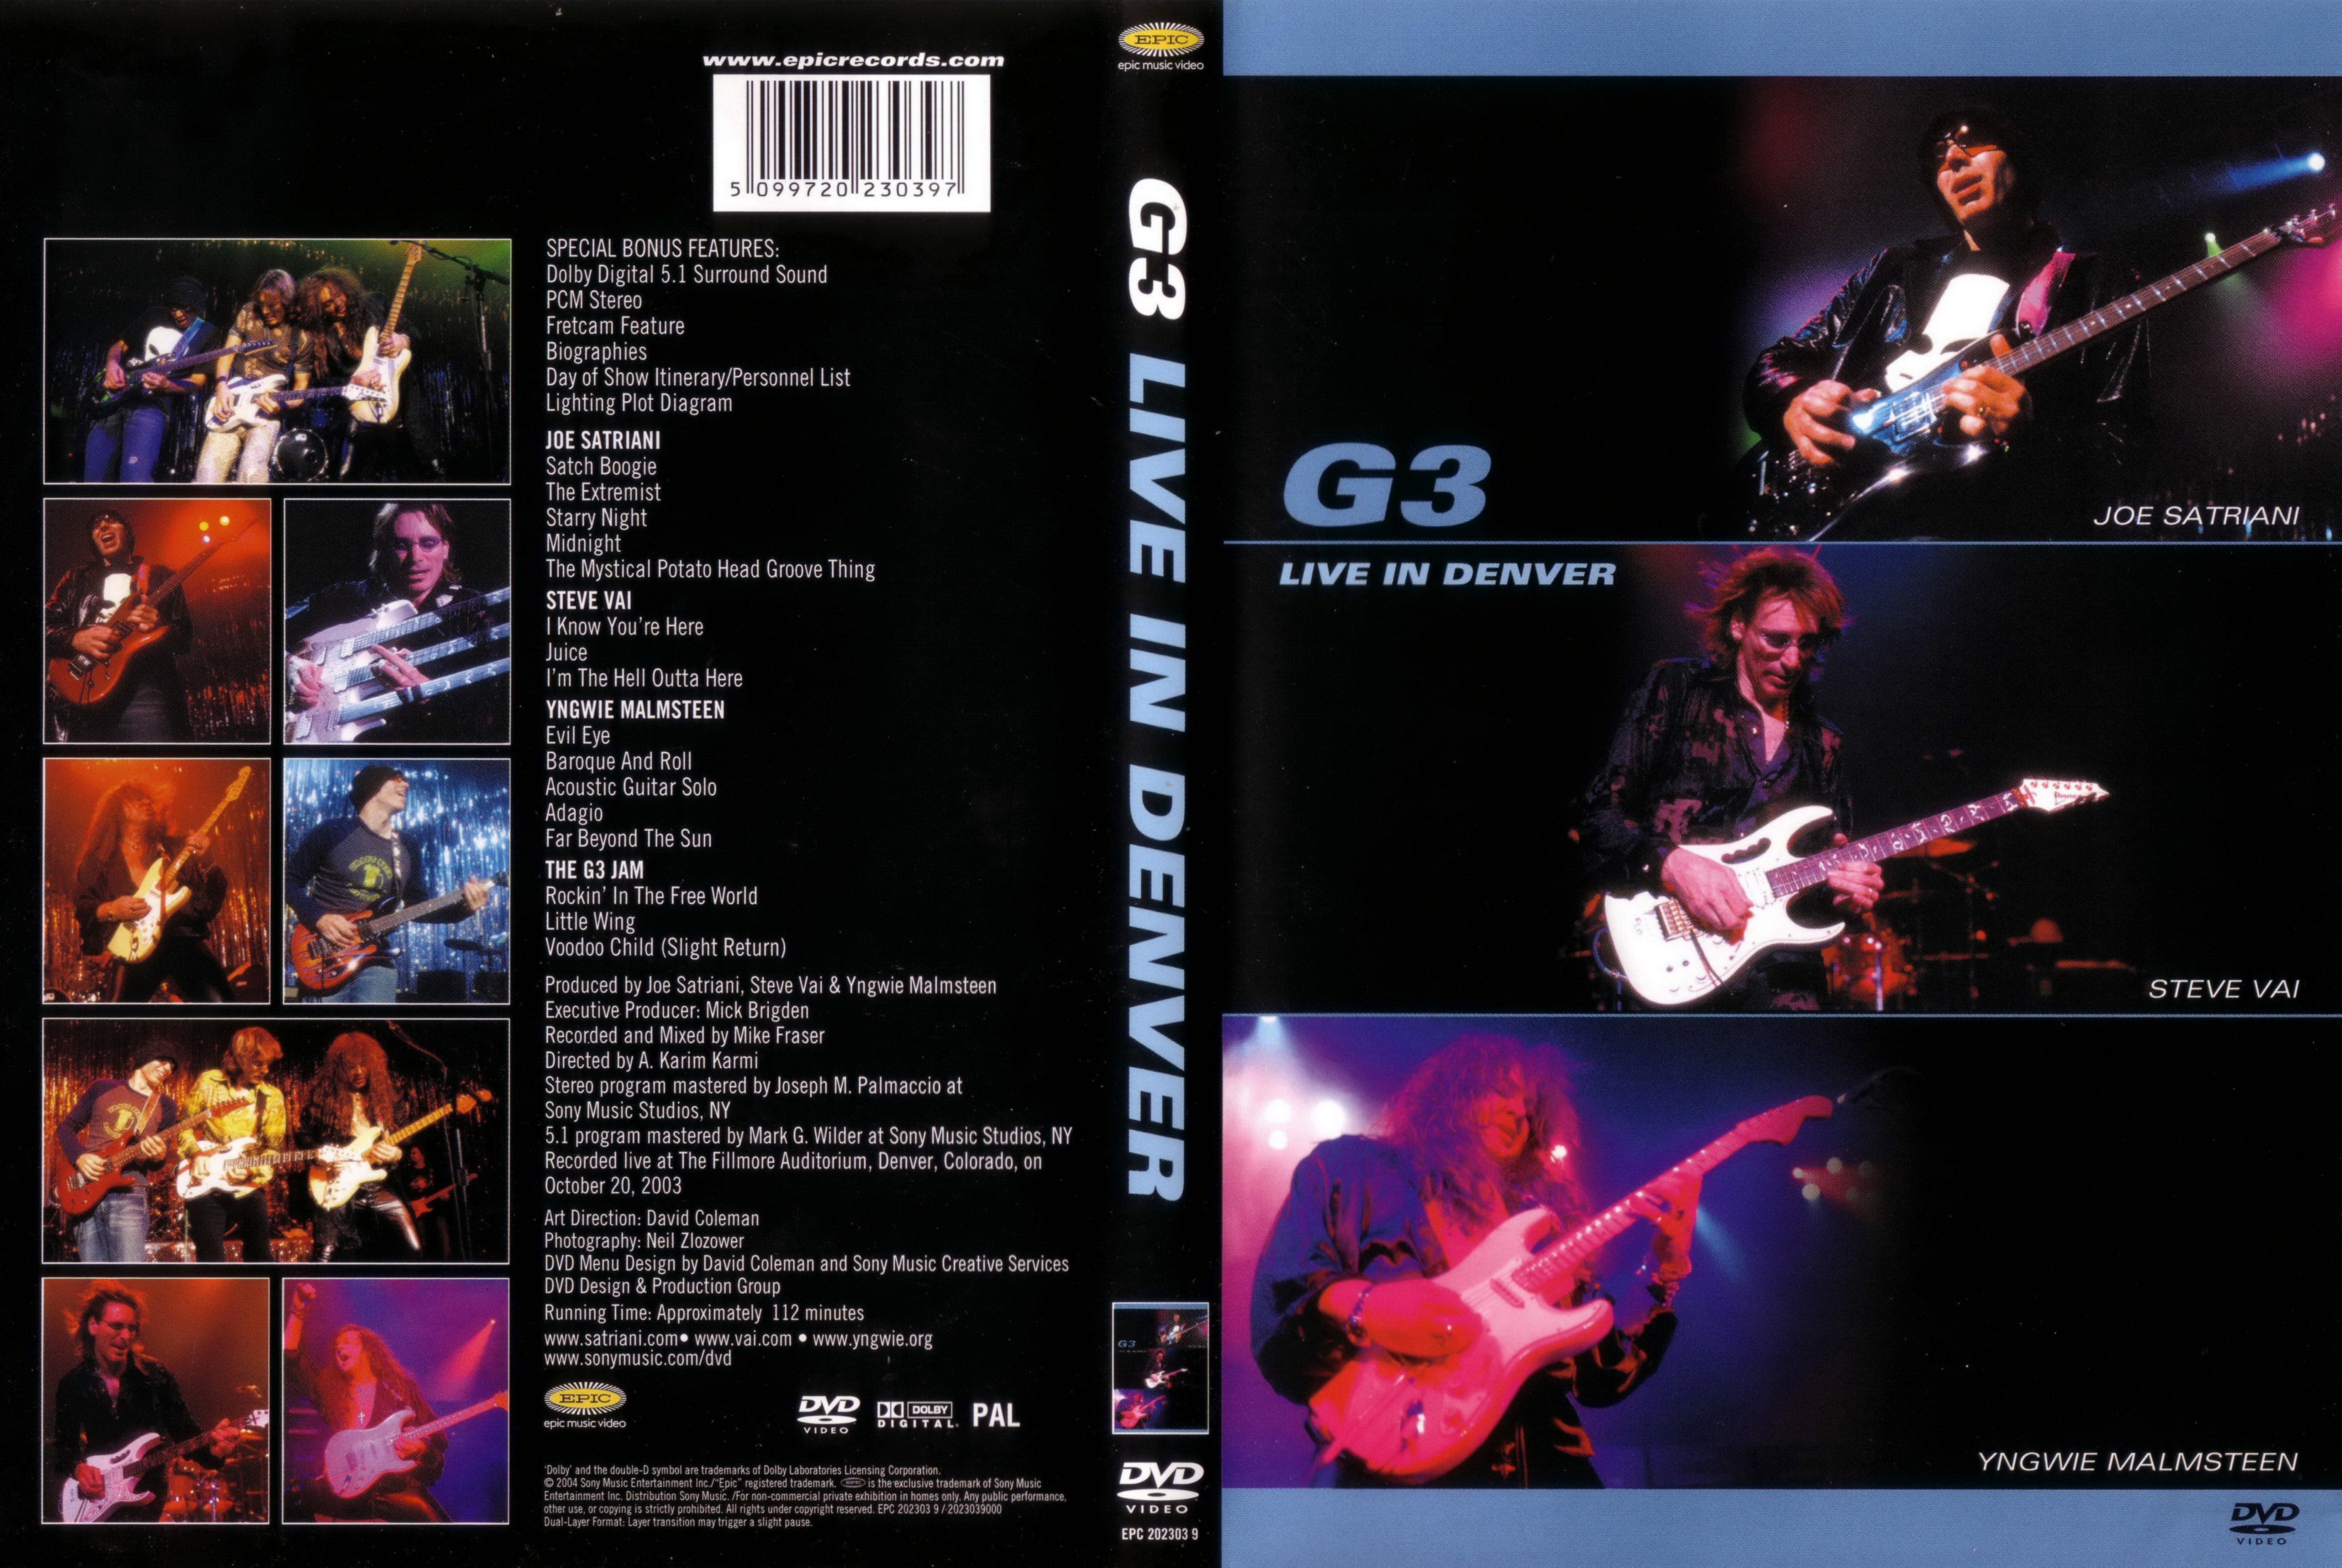 Jaquette DVD G3 live in Denver